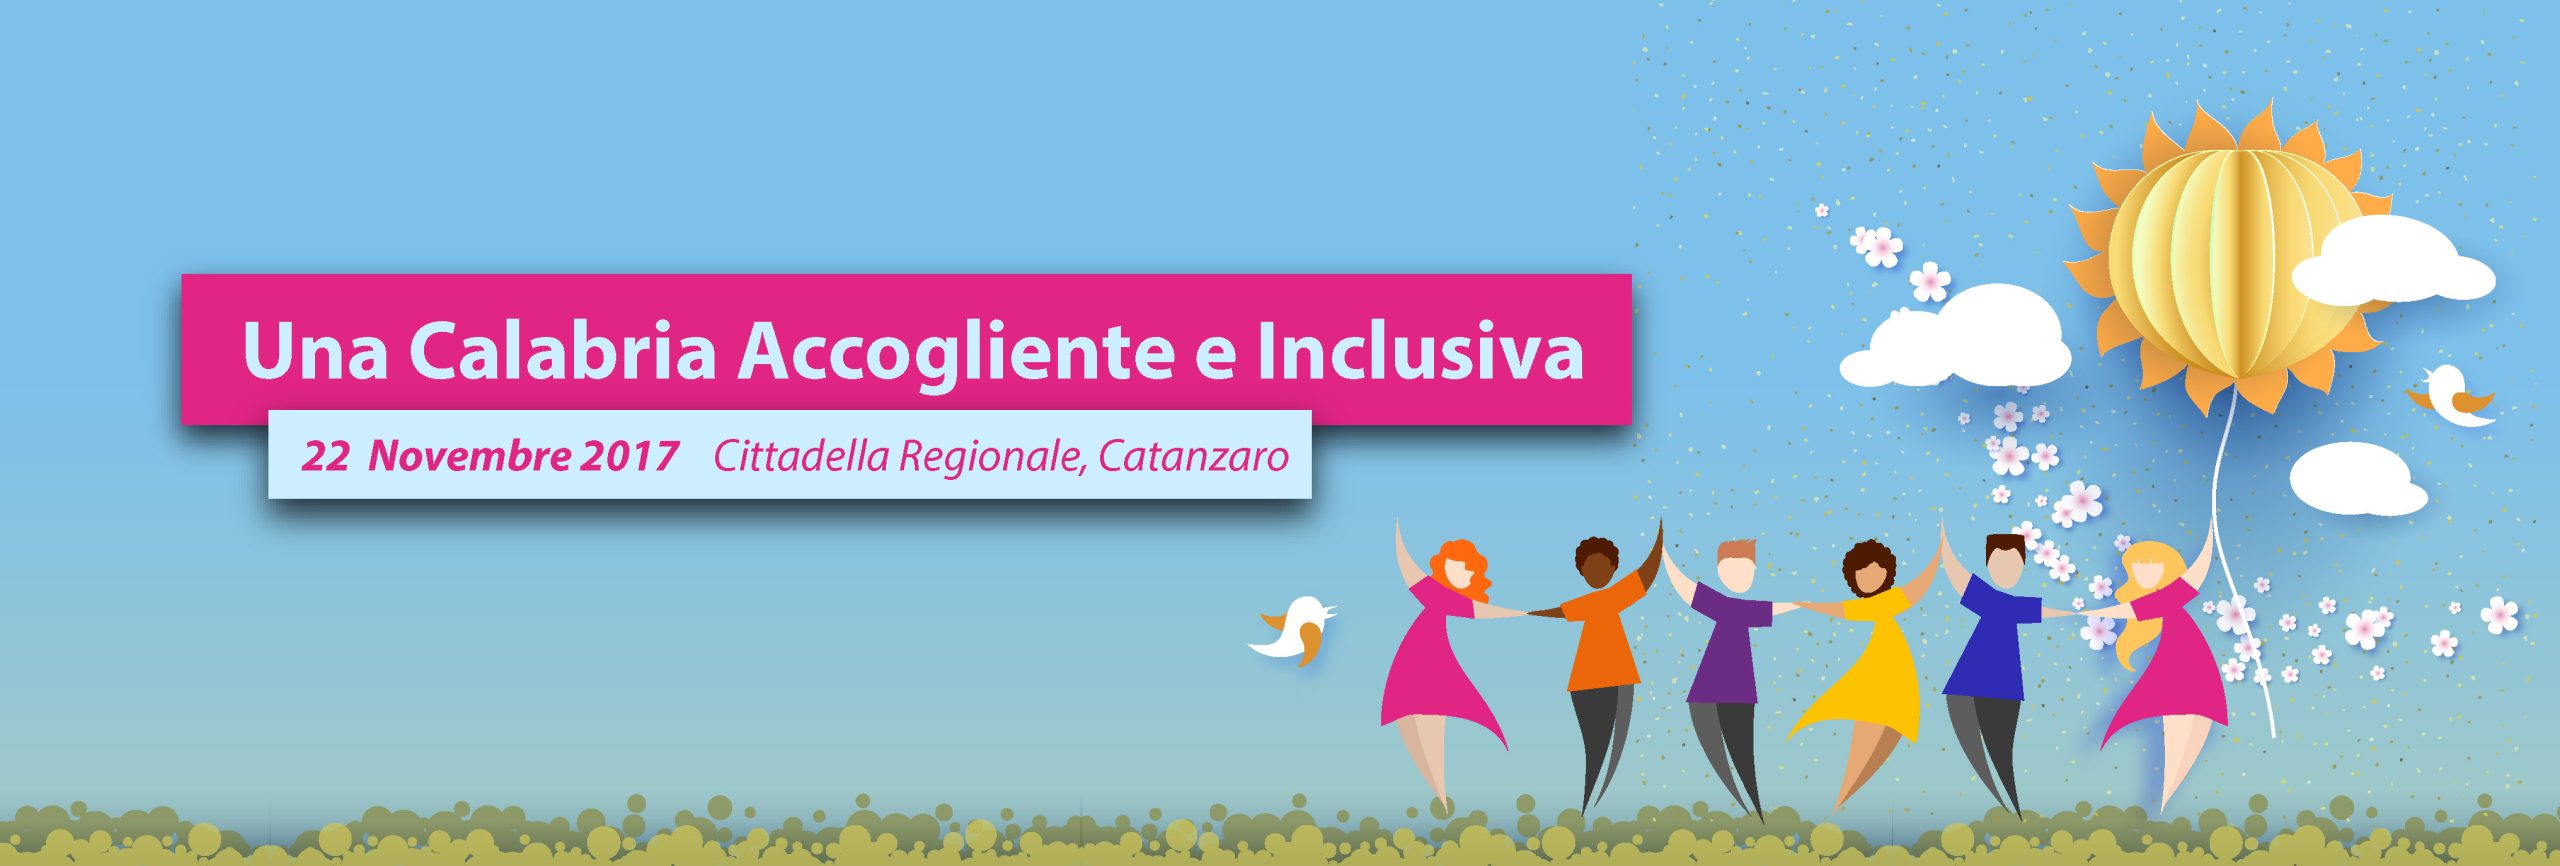 Una Calabria accogliente ed inclusiva